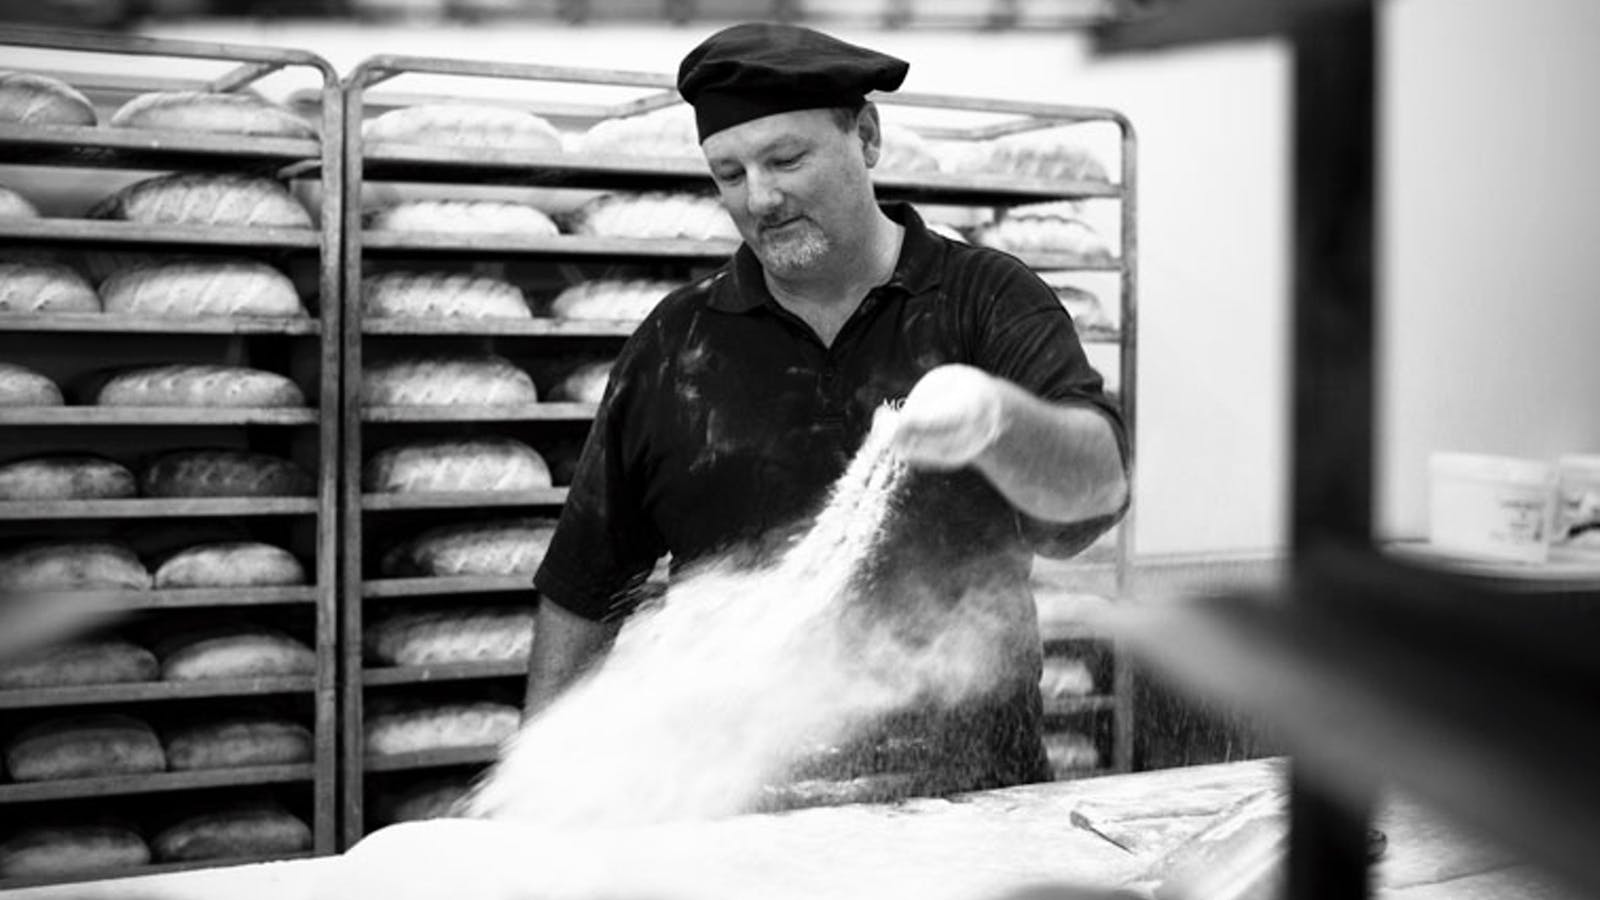 Stephen Arnott shaping dough